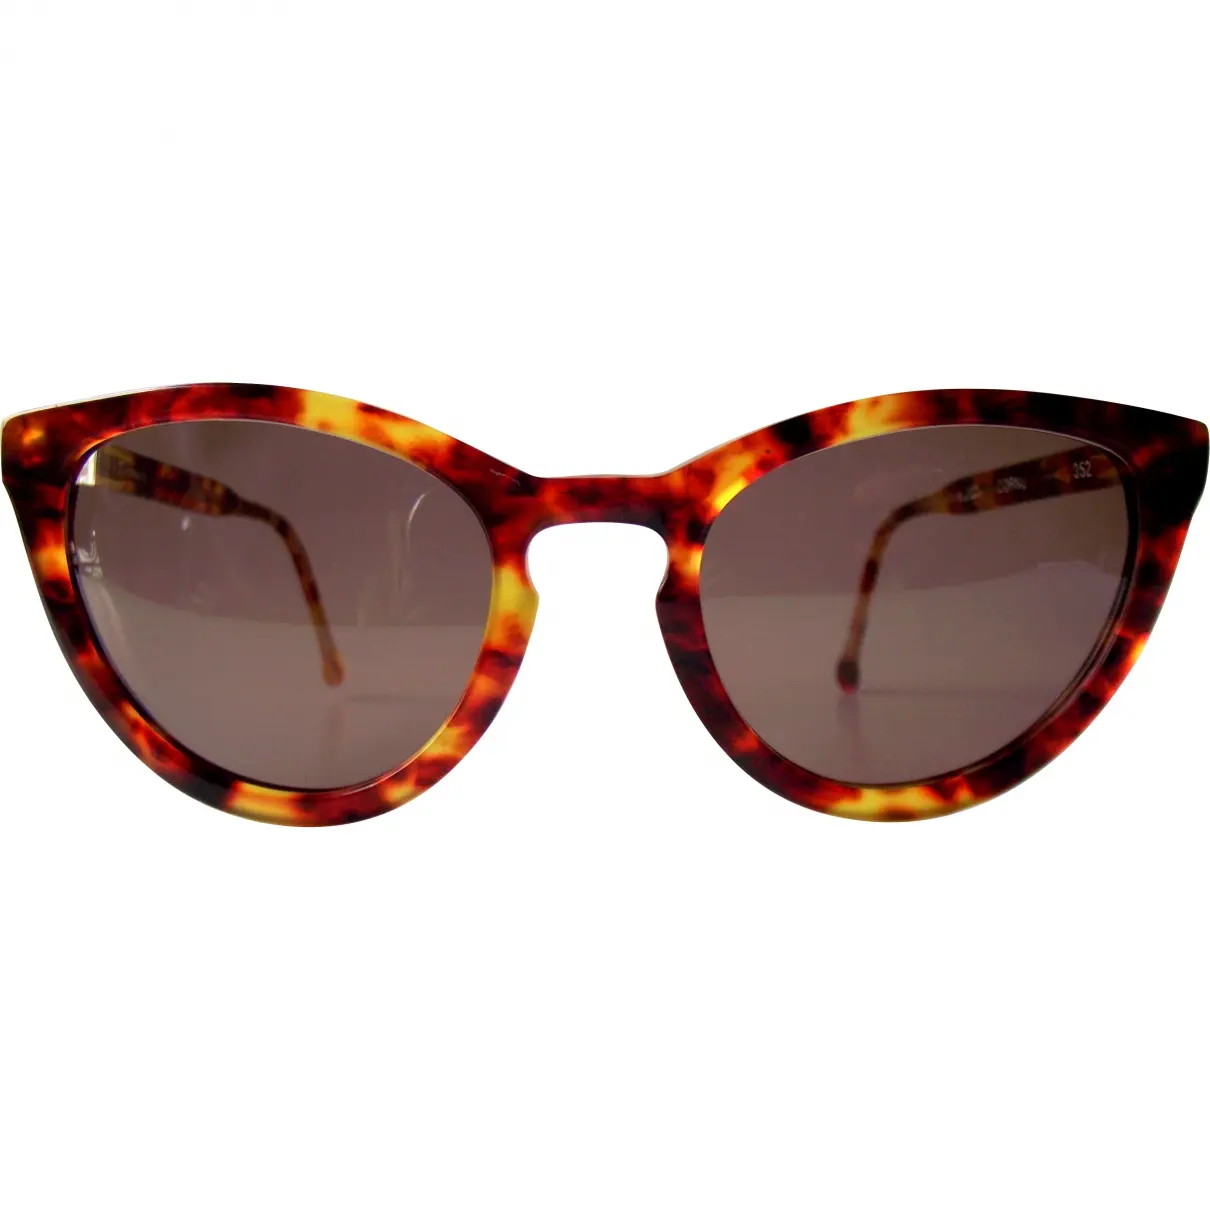 Brown Sunglasses Autre Marque - Vintage